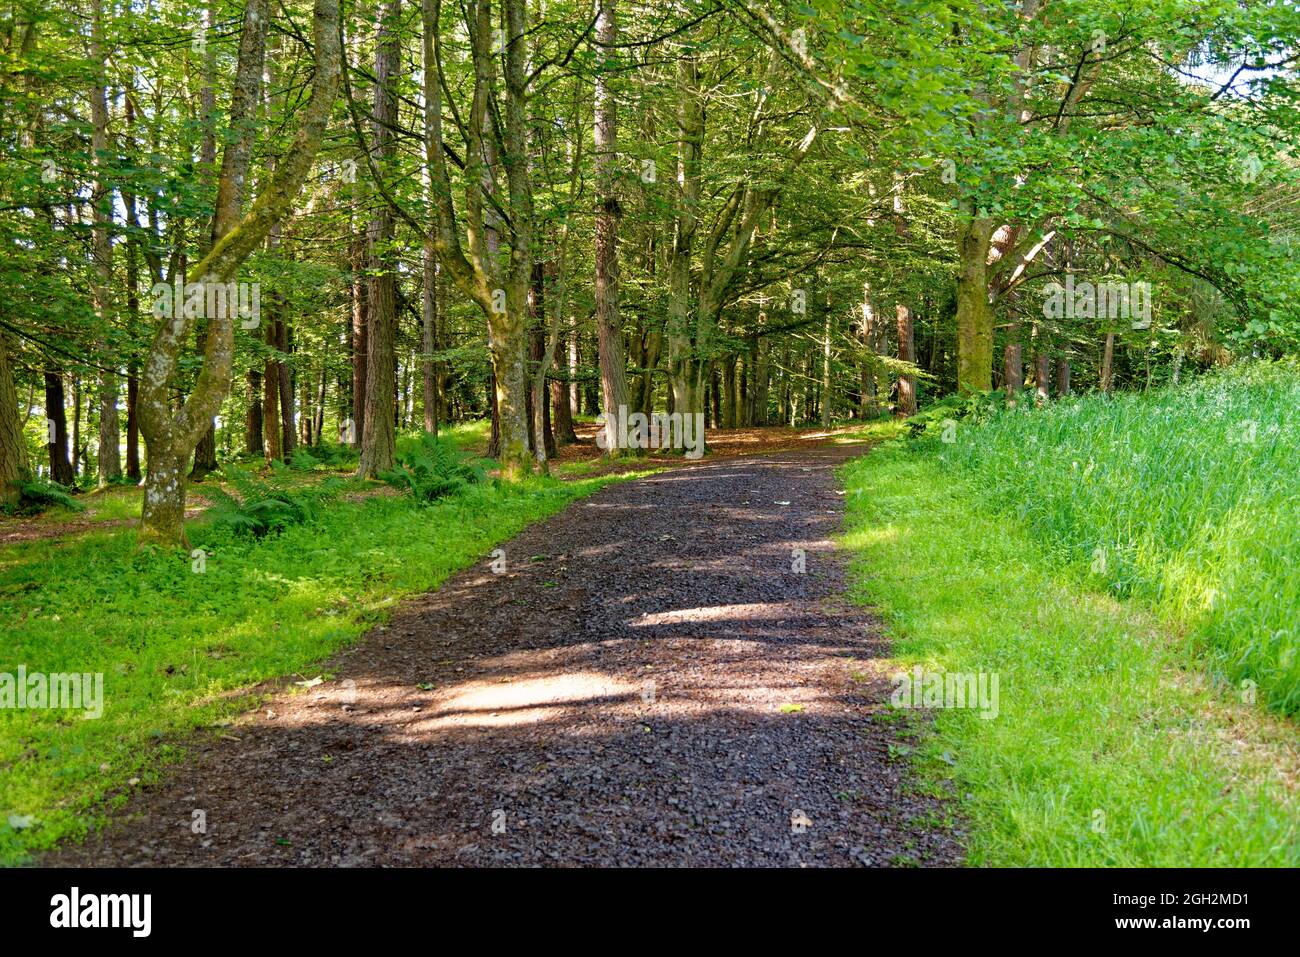 Une promenade à travers les bois - Kinnoull Hill Woodland Park - Perth. Écosse, Royaume-Uni. 17 juillet 2021 Banque D'Images